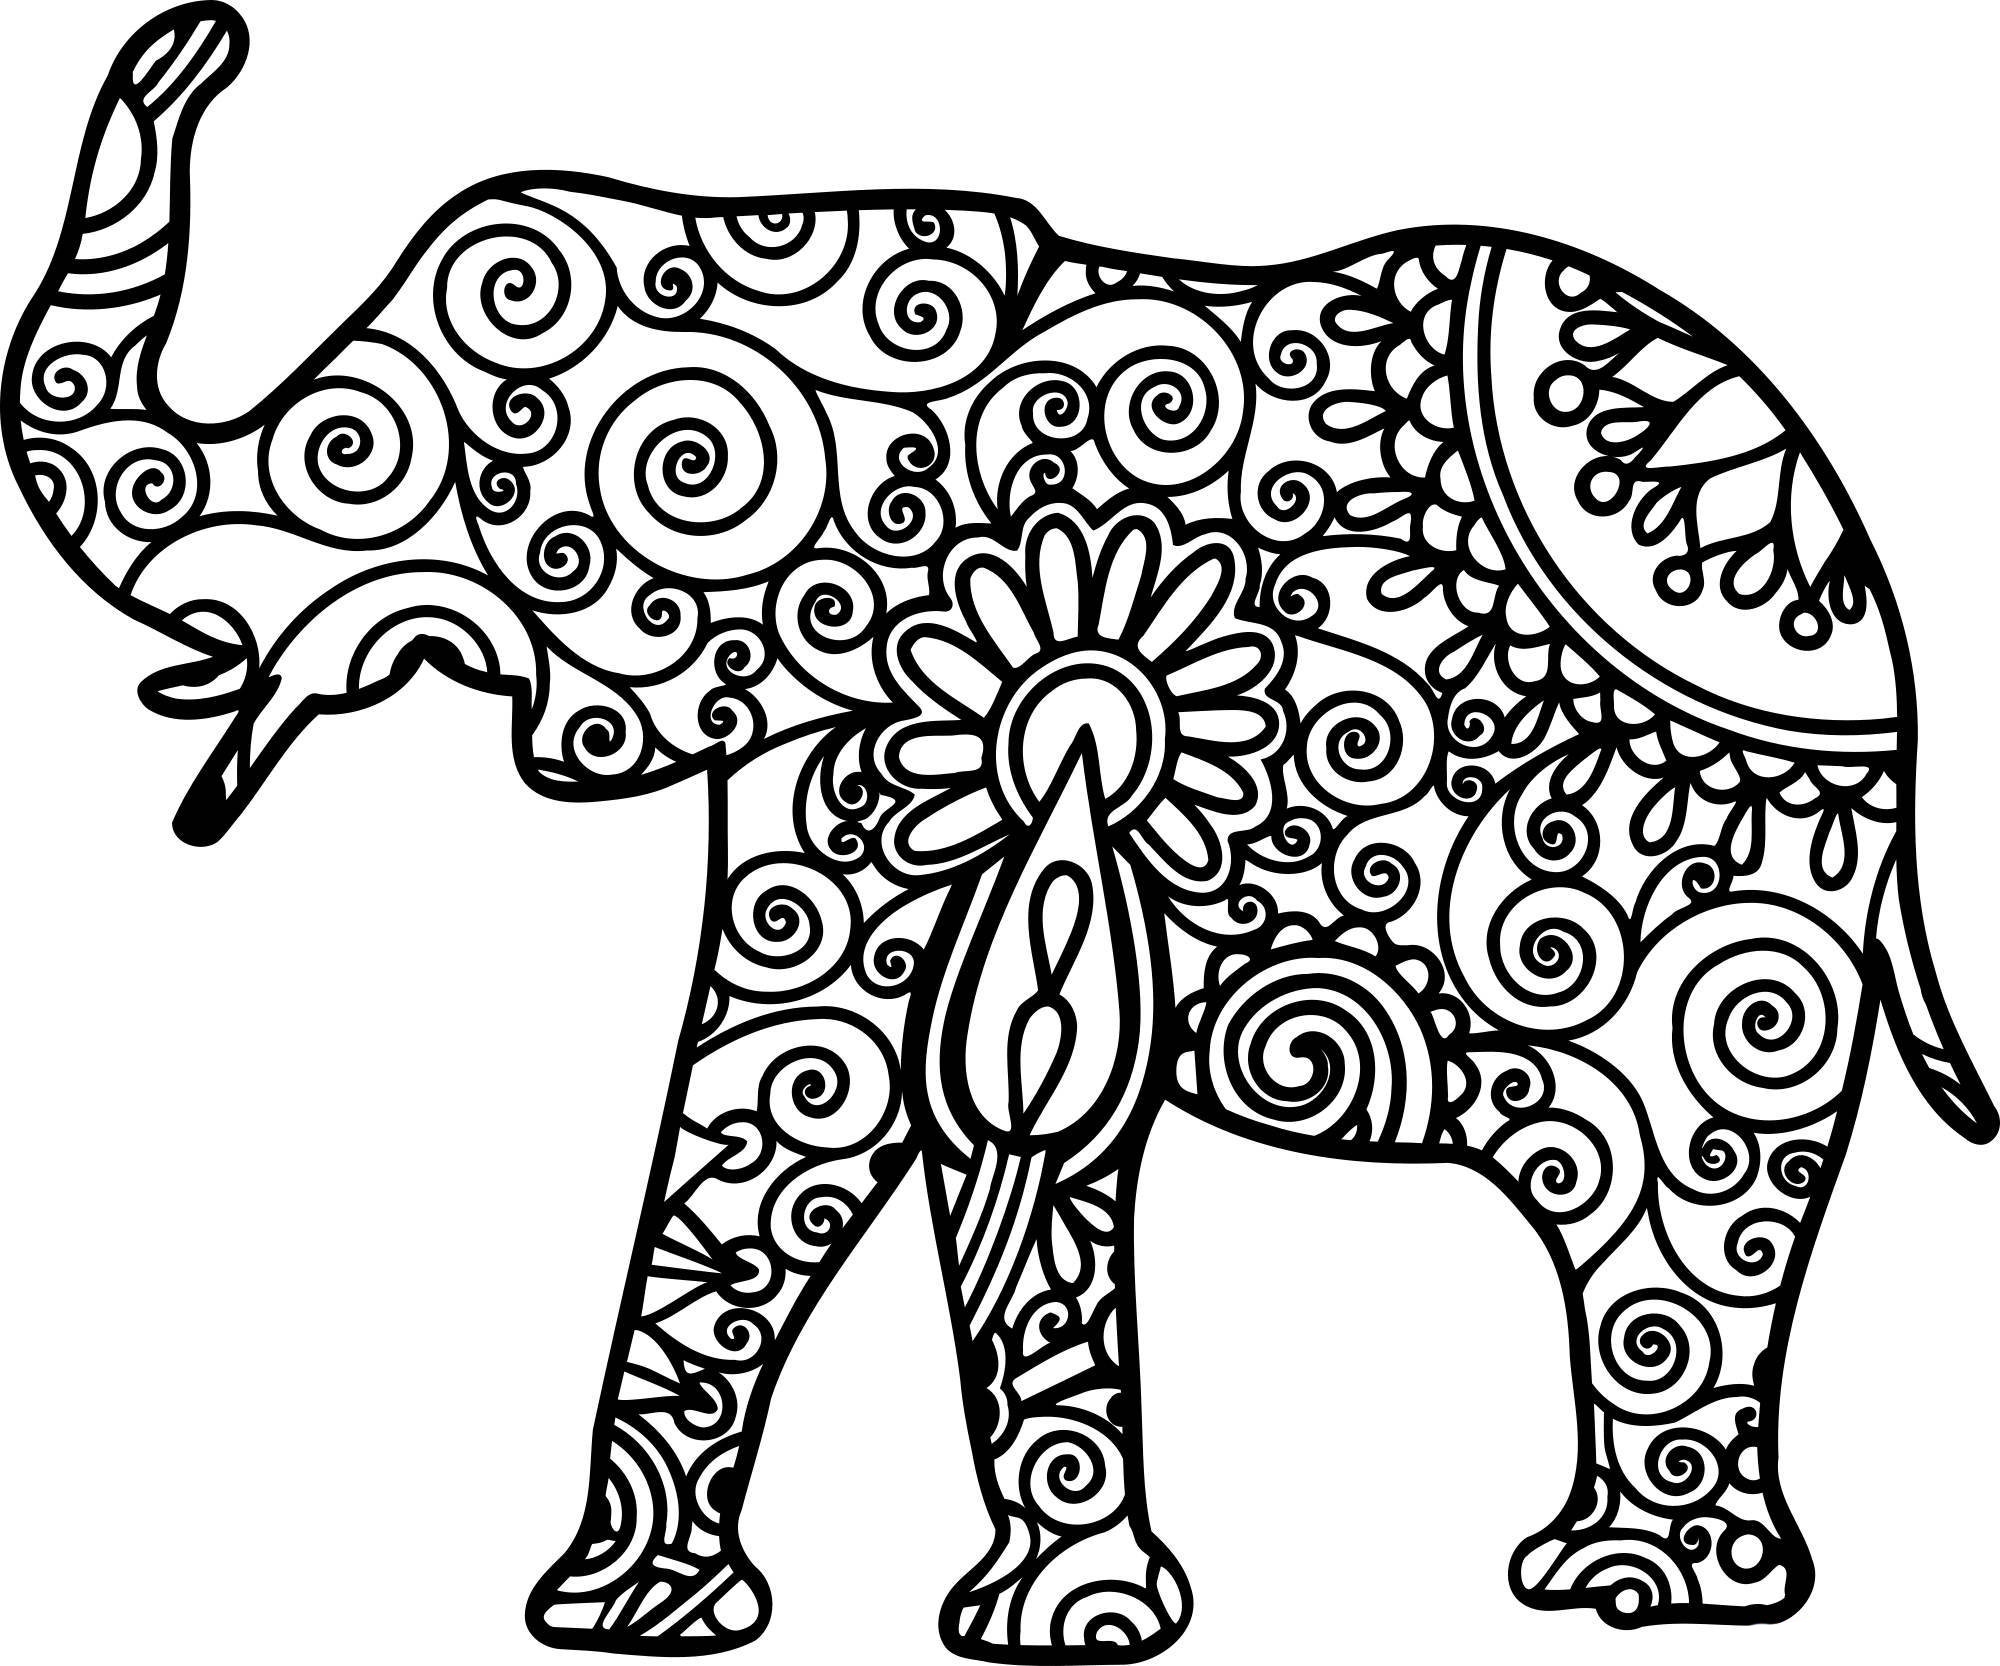 Индийский слон: изображения без лицензионных платежей